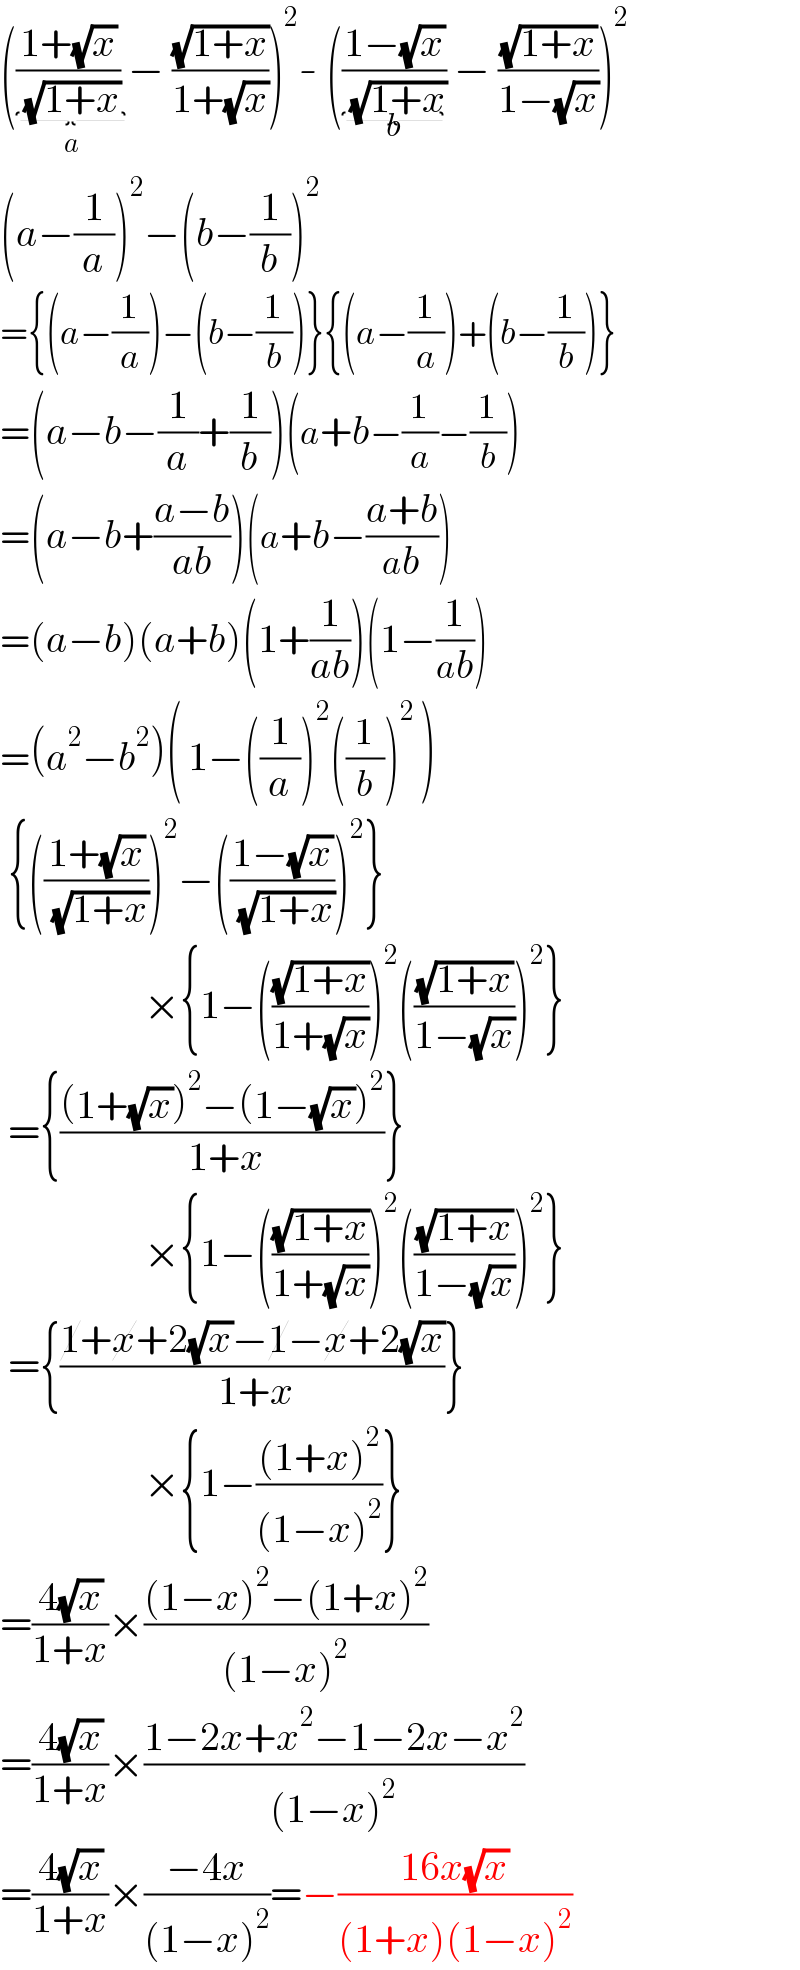 (((1+(√x))/( (√(1+x)))) _(a) − ((√(1+x))/(1+(√x))))^2 - (((1−(√x))/( (√(1+x))))_(b)  − ((√(1+x))/(1−(√x))))^2   (a−(1/a))^2 −(b−(1/b))^2   ={(a−(1/a))−(b−(1/b))}{(a−(1/a))+(b−(1/b))}  =(a−b−(1/a)+(1/b))(a+b−(1/a)−(1/b))  =(a−b+((a−b)/(ab)))(a+b−((a+b)/(ab)))  =(a−b)(a+b)(1+(1/(ab)))(1−(1/(ab)))  =(a^2 −b^2 )( 1−((1/a))^2 ((1/b))^2  )   {(((1+(√x))/( (√(1+x)))))^2 −(((1−(√x))/( (√(1+x)))))^2 }                    ×{1−(((√(1+x))/(1+(√x))))^2 (((√(1+x))/(1−(√x))))^2 }   ={(((1+(√x))^2 −(1−(√x))^2 )/( 1+x))}                    ×{1−(((√(1+x))/(1+(√x))))^2 (((√(1+x))/(1−(√x))))^2 }   ={((1+x+2(√x)−1−x+2(√x))/( 1+x))}                    ×{1−(((1+x)^2 )/((1−x)^2 ))}  =((4(√x))/(1+x))×(((1−x)^2 −(1+x)^2 )/((1−x)^2 ))  =((4(√x))/(1+x))×((1−2x+x^2 −1−2x−x^2 )/((1−x)^2 ))  =((4(√x))/(1+x))×((−4x)/((1−x)^2 ))=−((16x(√x))/((1+x)(1−x)^2 ))  